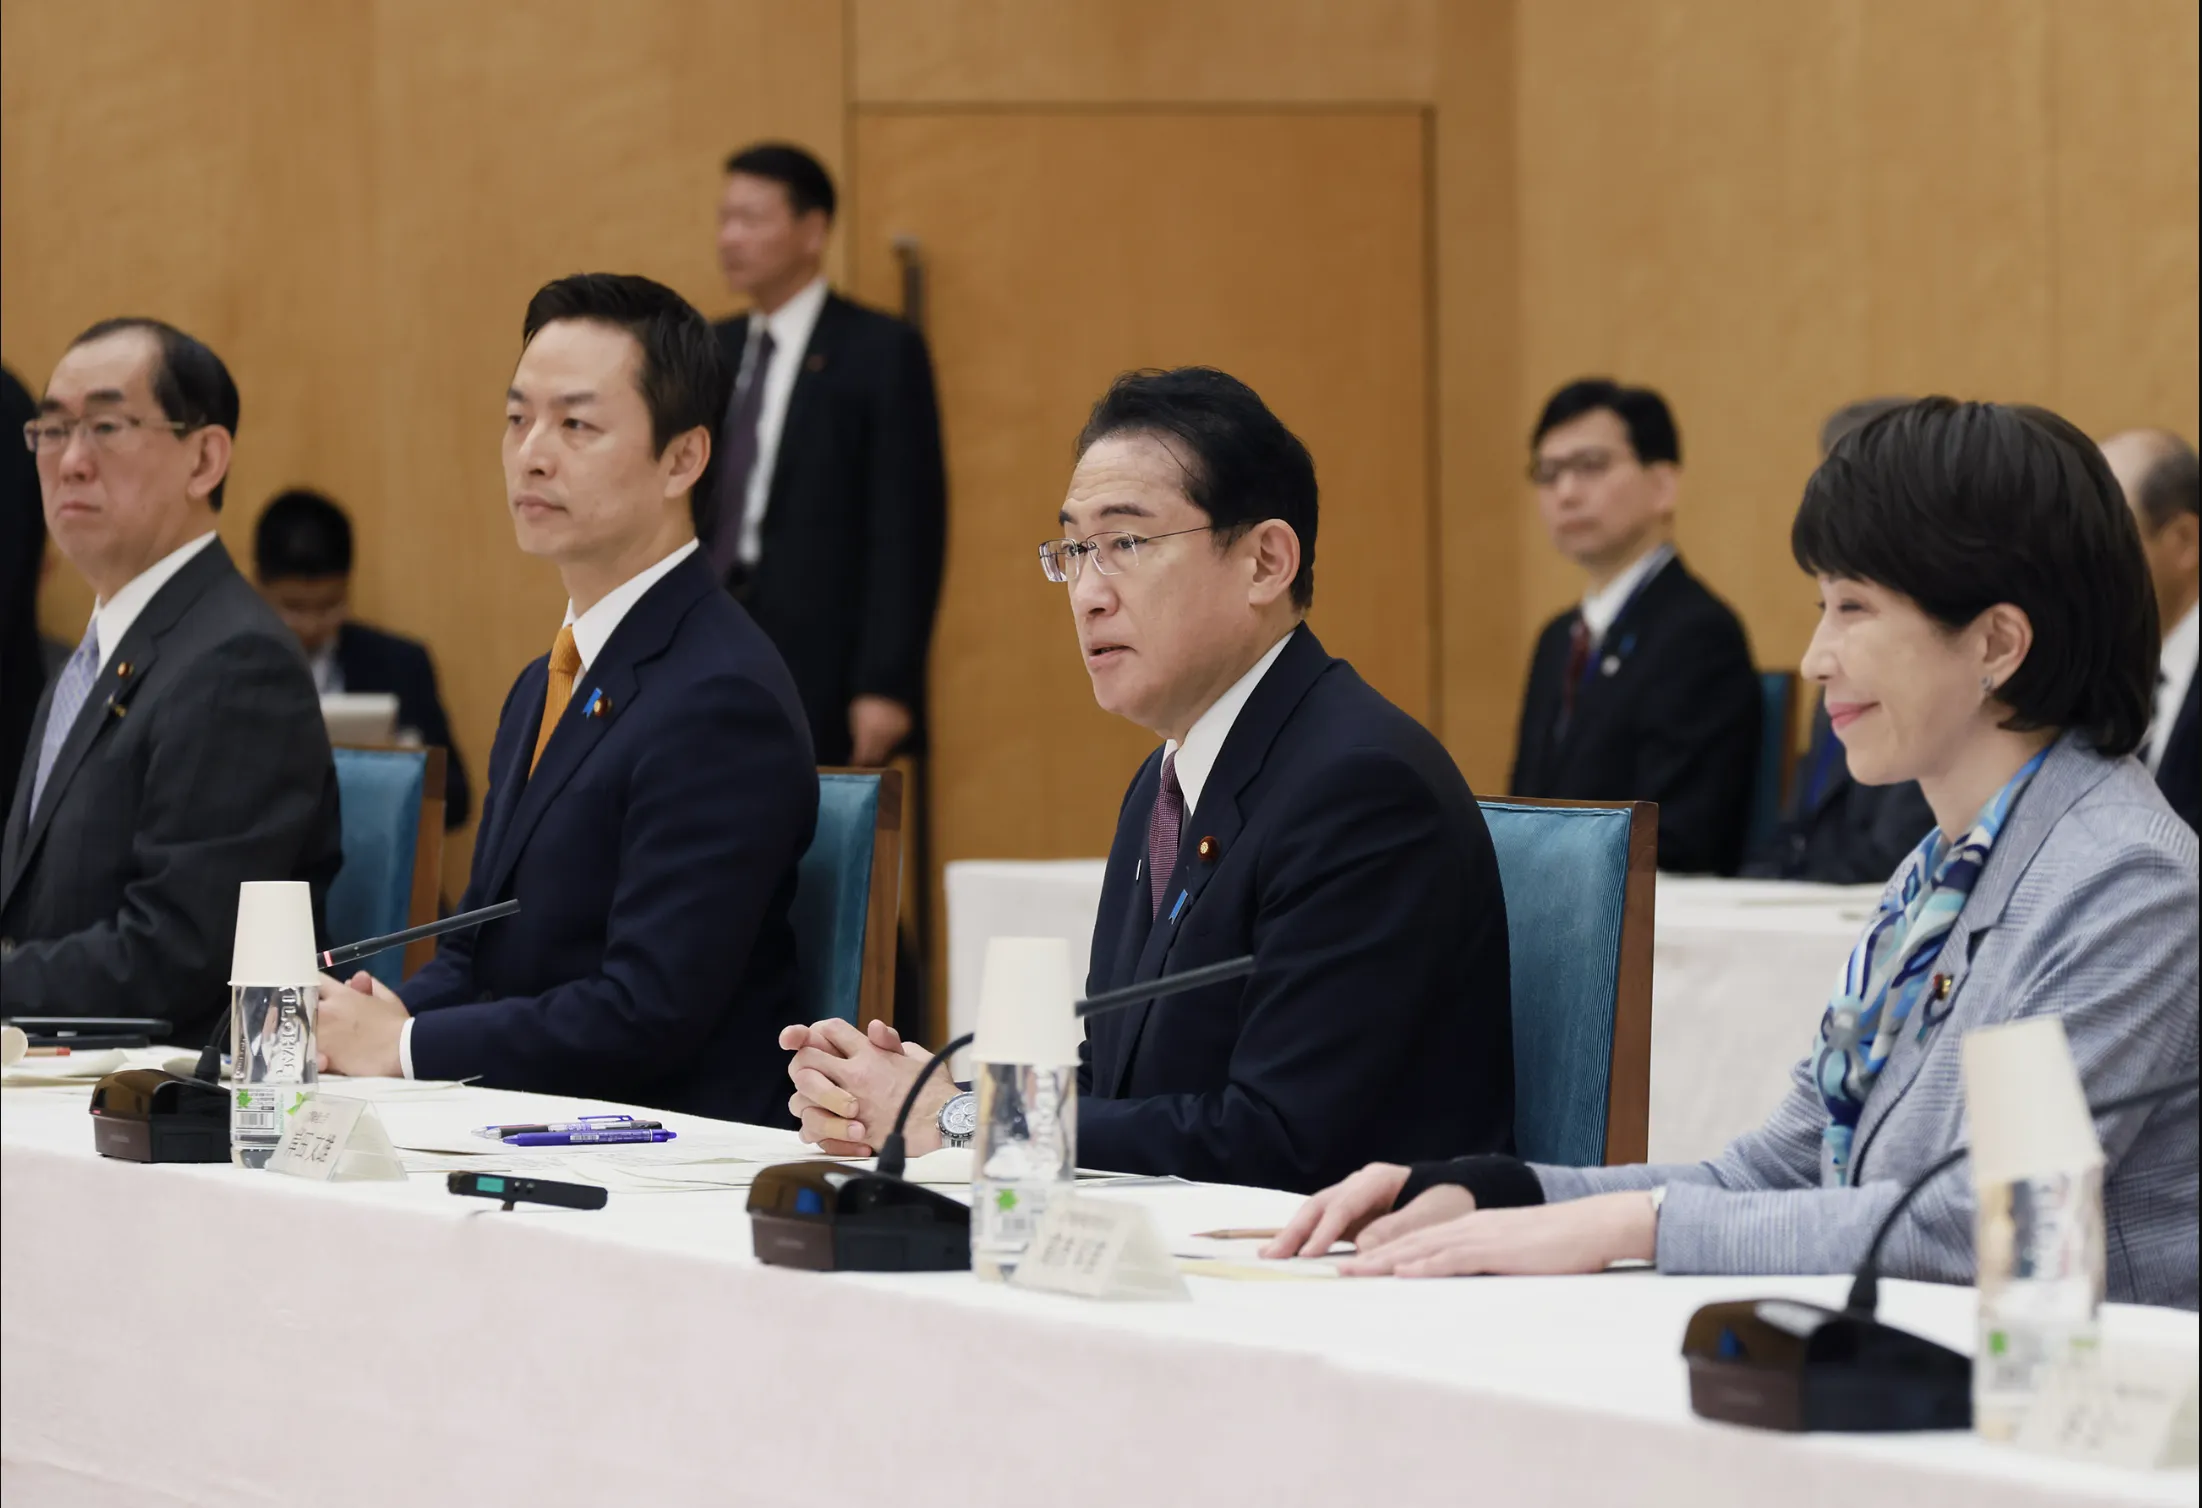 岸田総理主導の第1回AI戦略会議: ポテンシャルとリスクの議論から始まる新たな展開